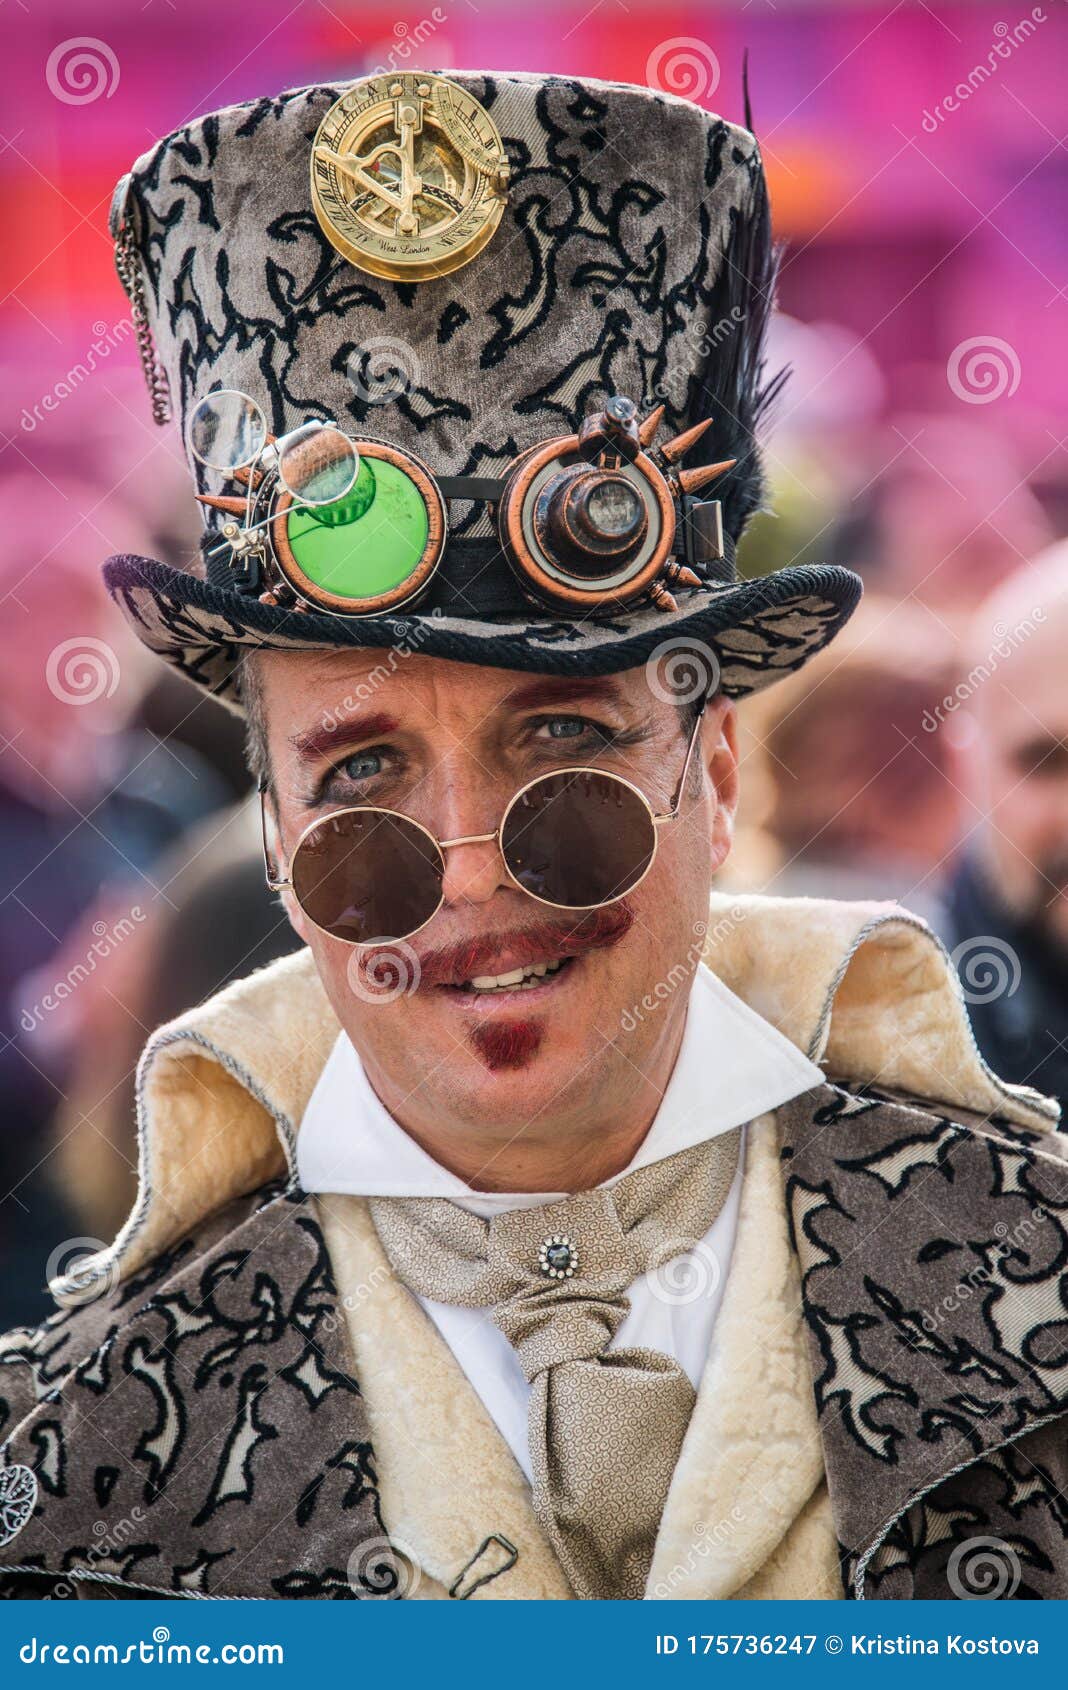 Ensemble de costumes steampunk homme (chapeau haut, lunettes, gants, canne,  crav